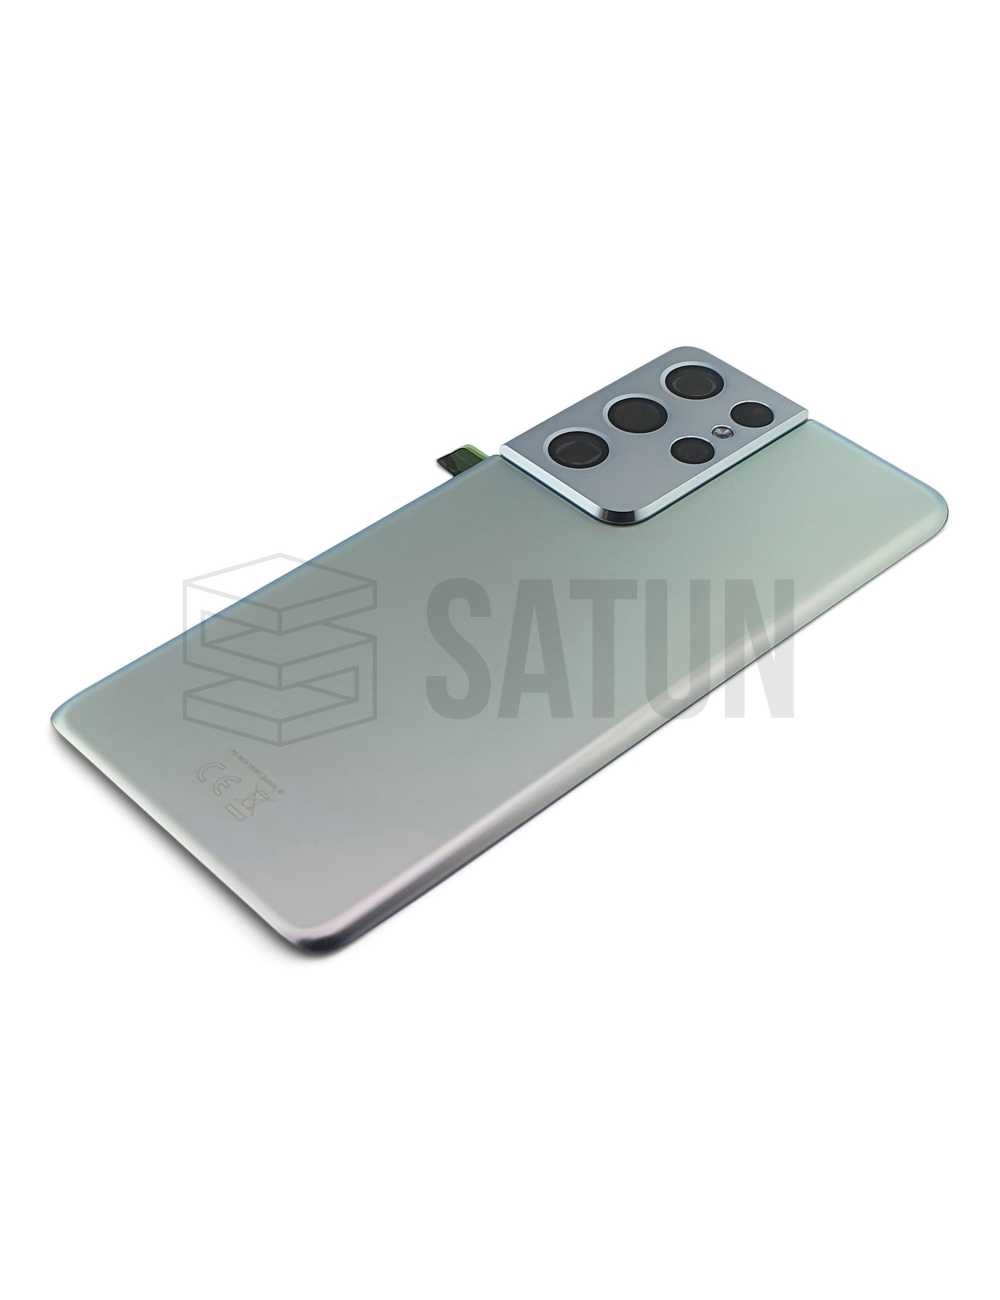 GH82-24499B - Tapa de batería Samsung Galaxy S21 Ultra 5G plata.